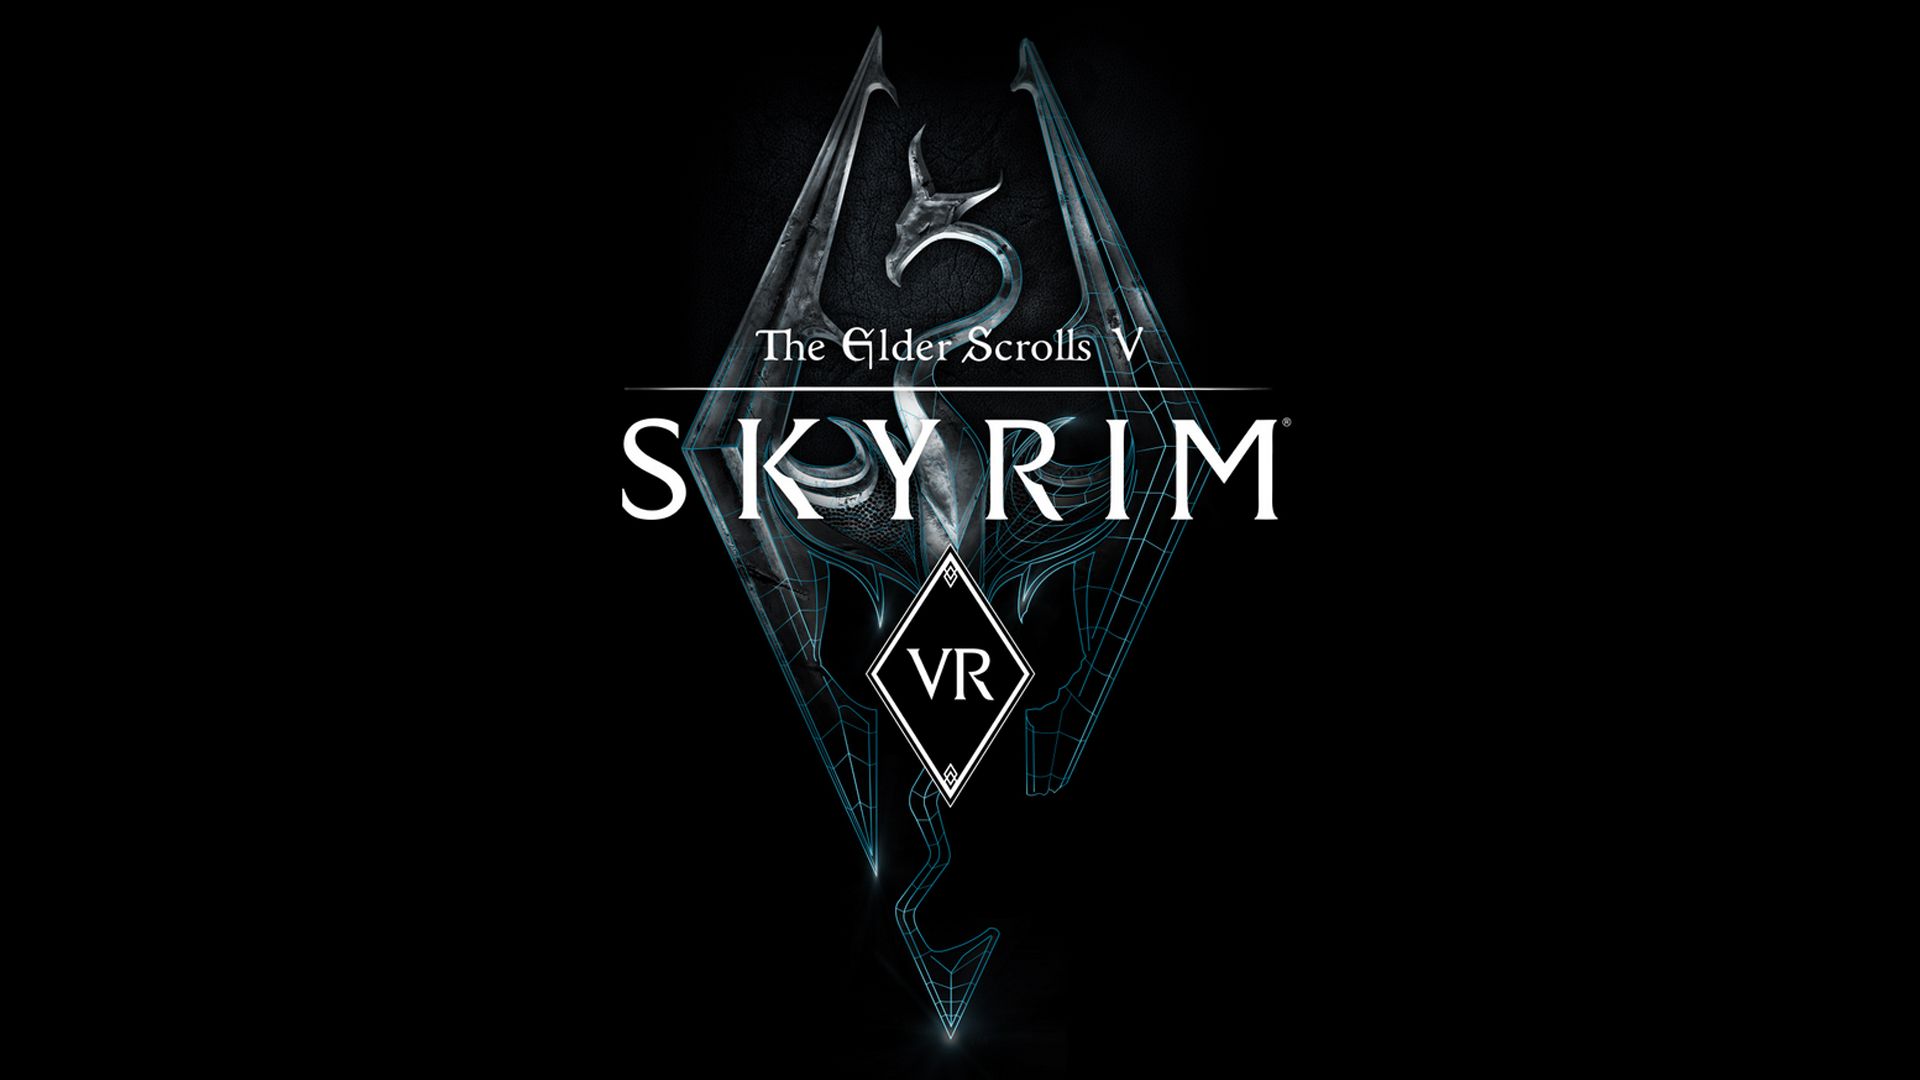 Recensione del gioco The Elder Scrolls V: Skyrim VR